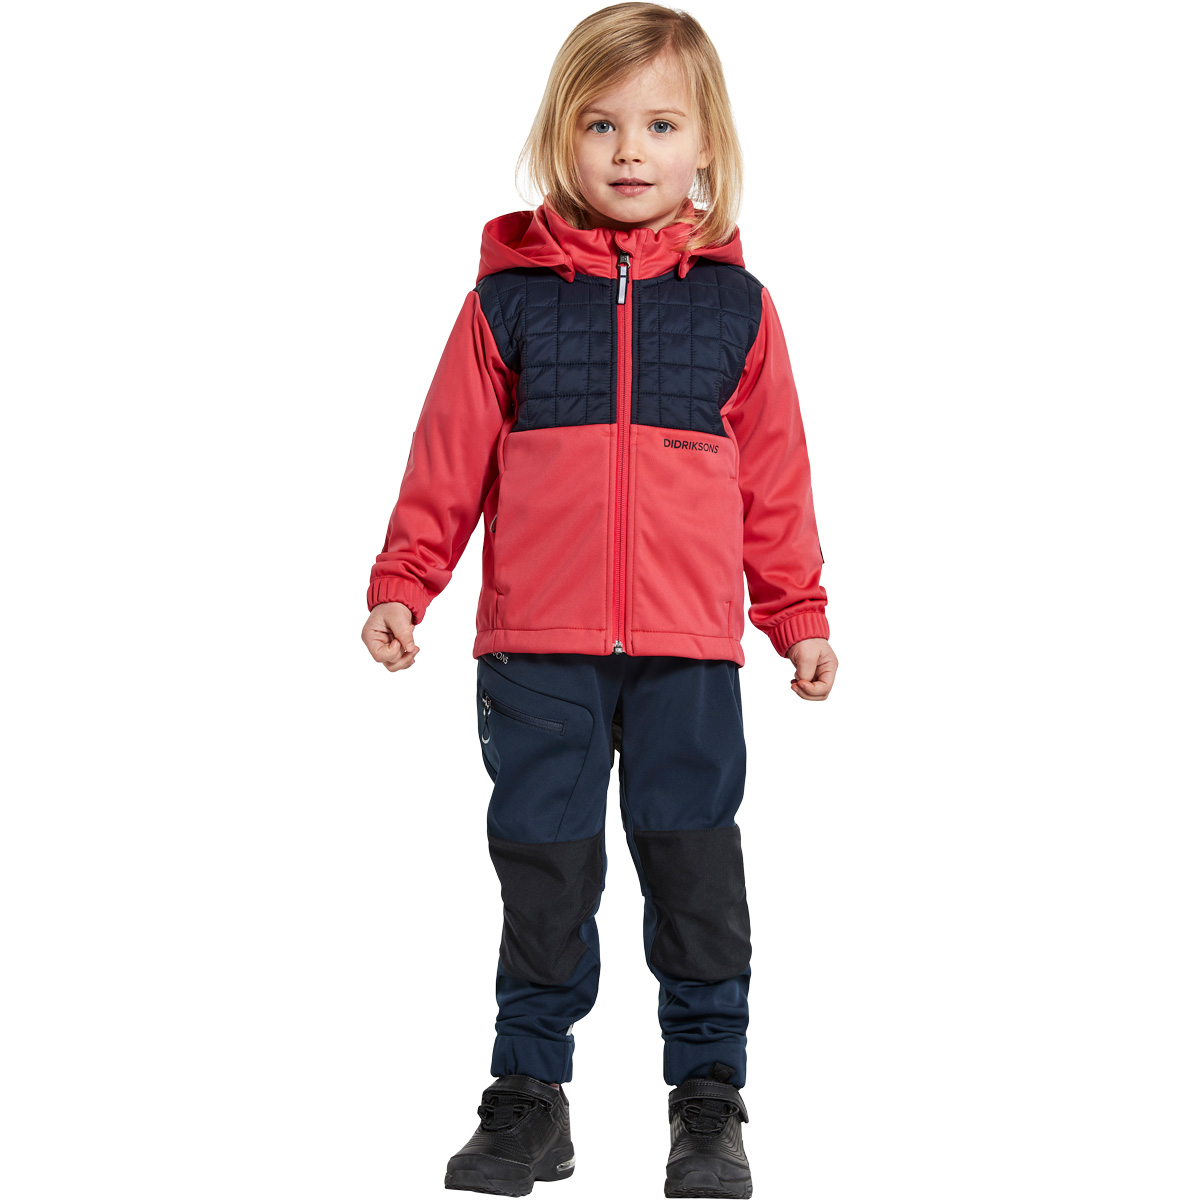 kilometer Opfylde Løft dig op Softshell jakker til børn - Køb softshell jakke til børn online her